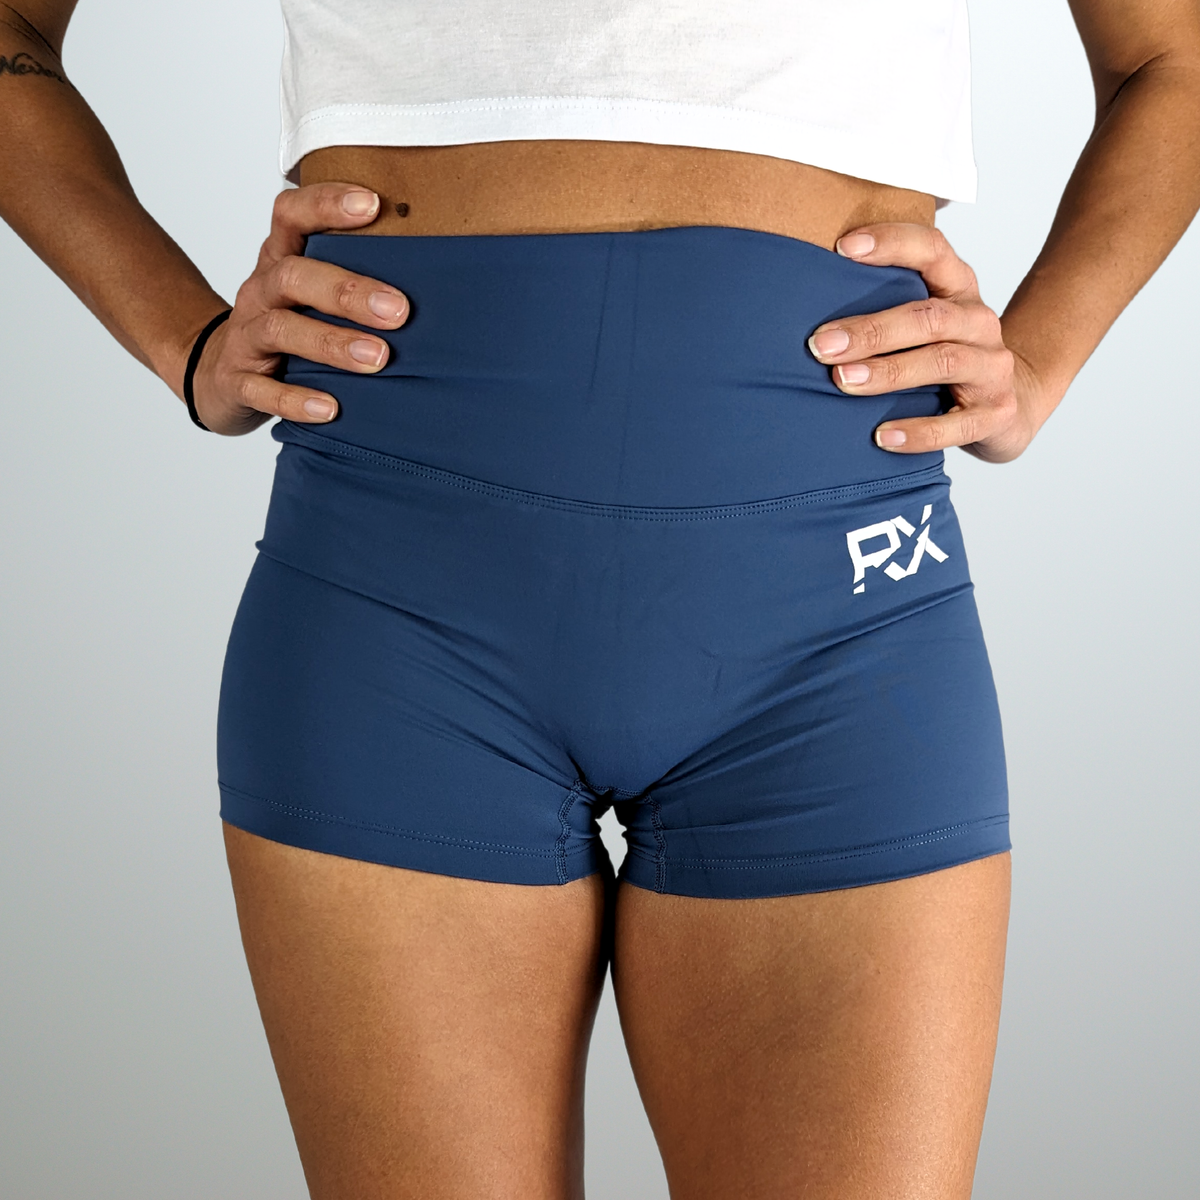 Short femme bleu idéal crossFit, running, fitness – RxWEAR